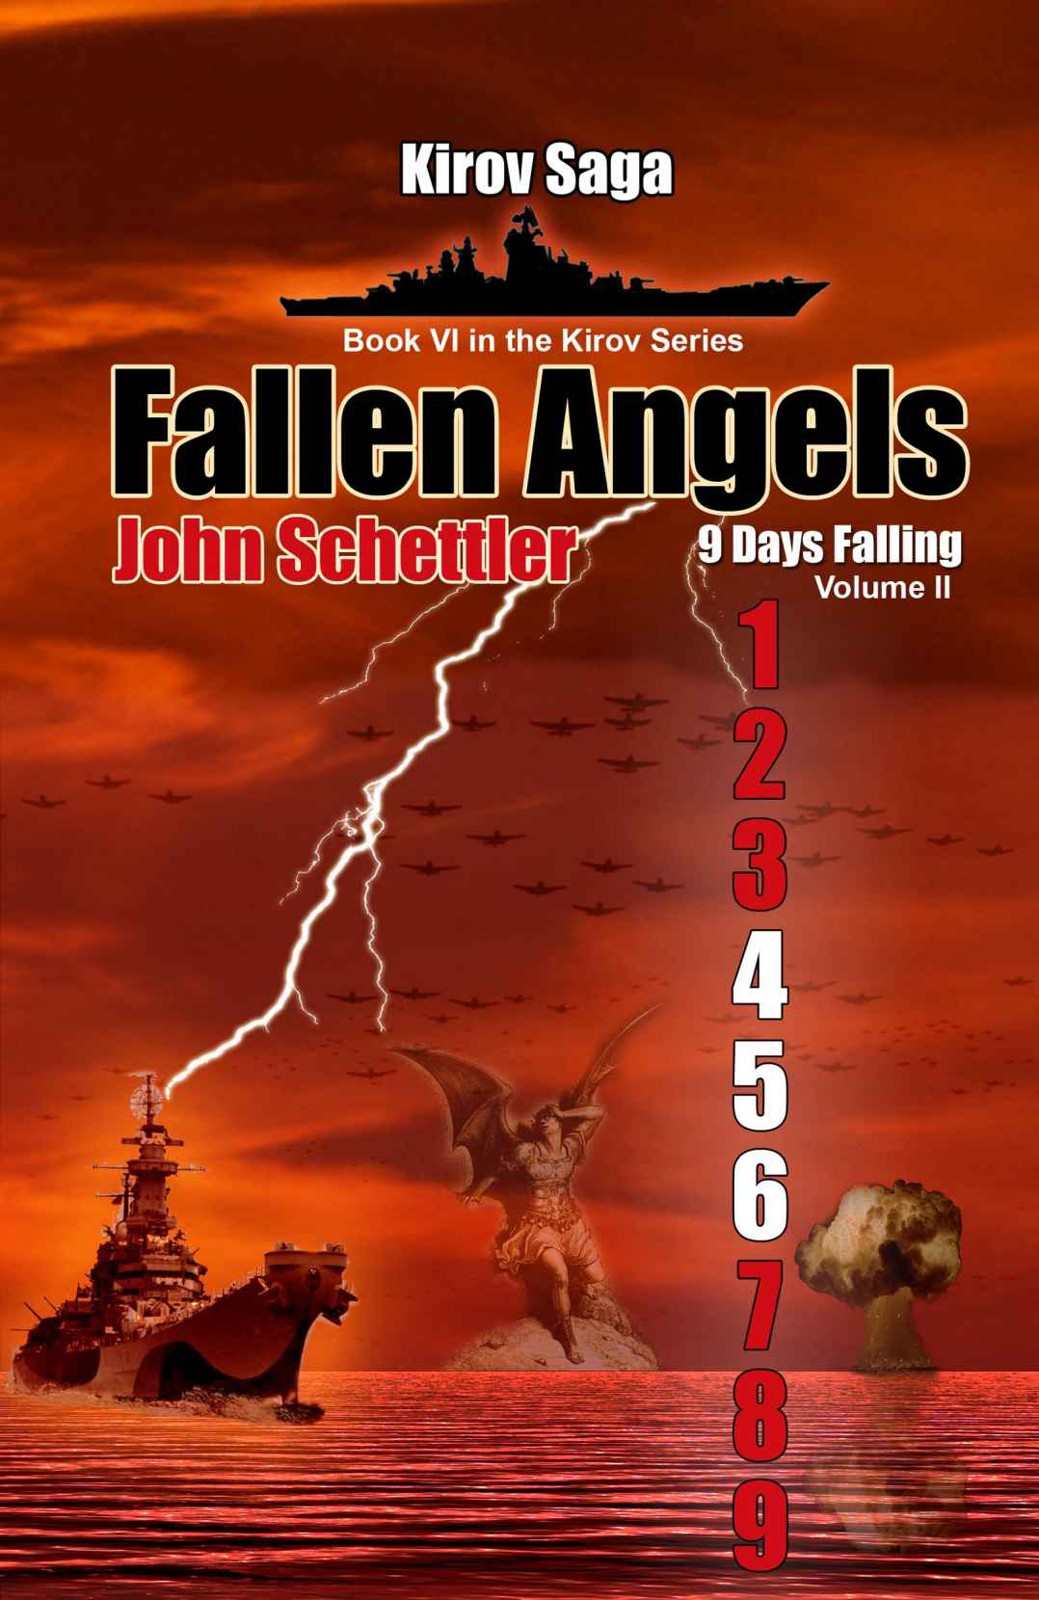 Schettler John - Fallen Angels: 9 Days Falling, Volume II скачать бесплатно